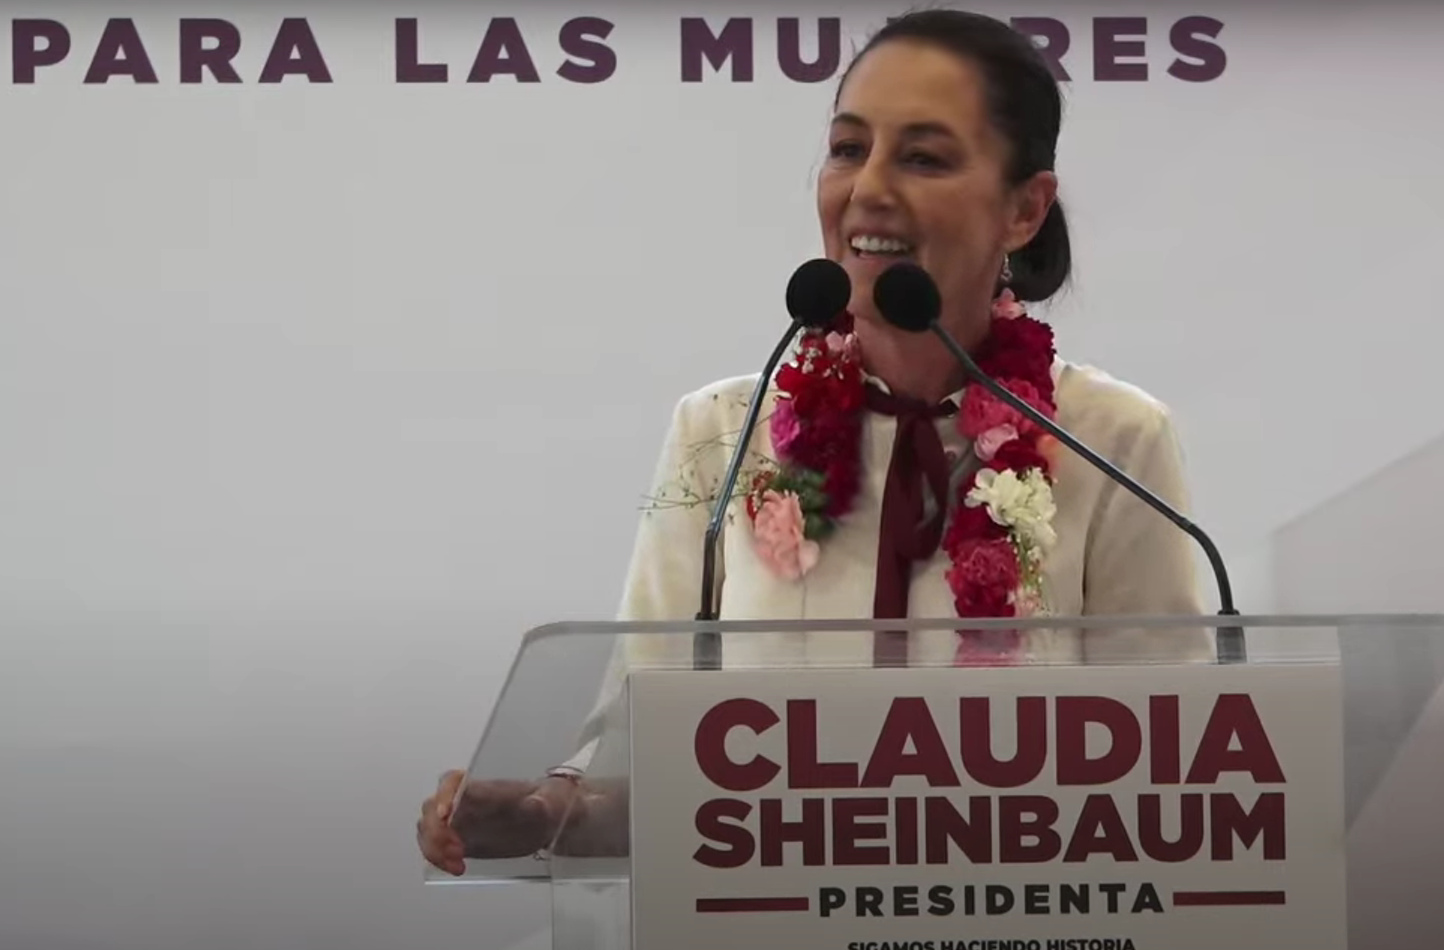 Presentó Claudia Sheinbaum 11 acciones de la “República de y para Mujeres” en el marco del 8 de marzo